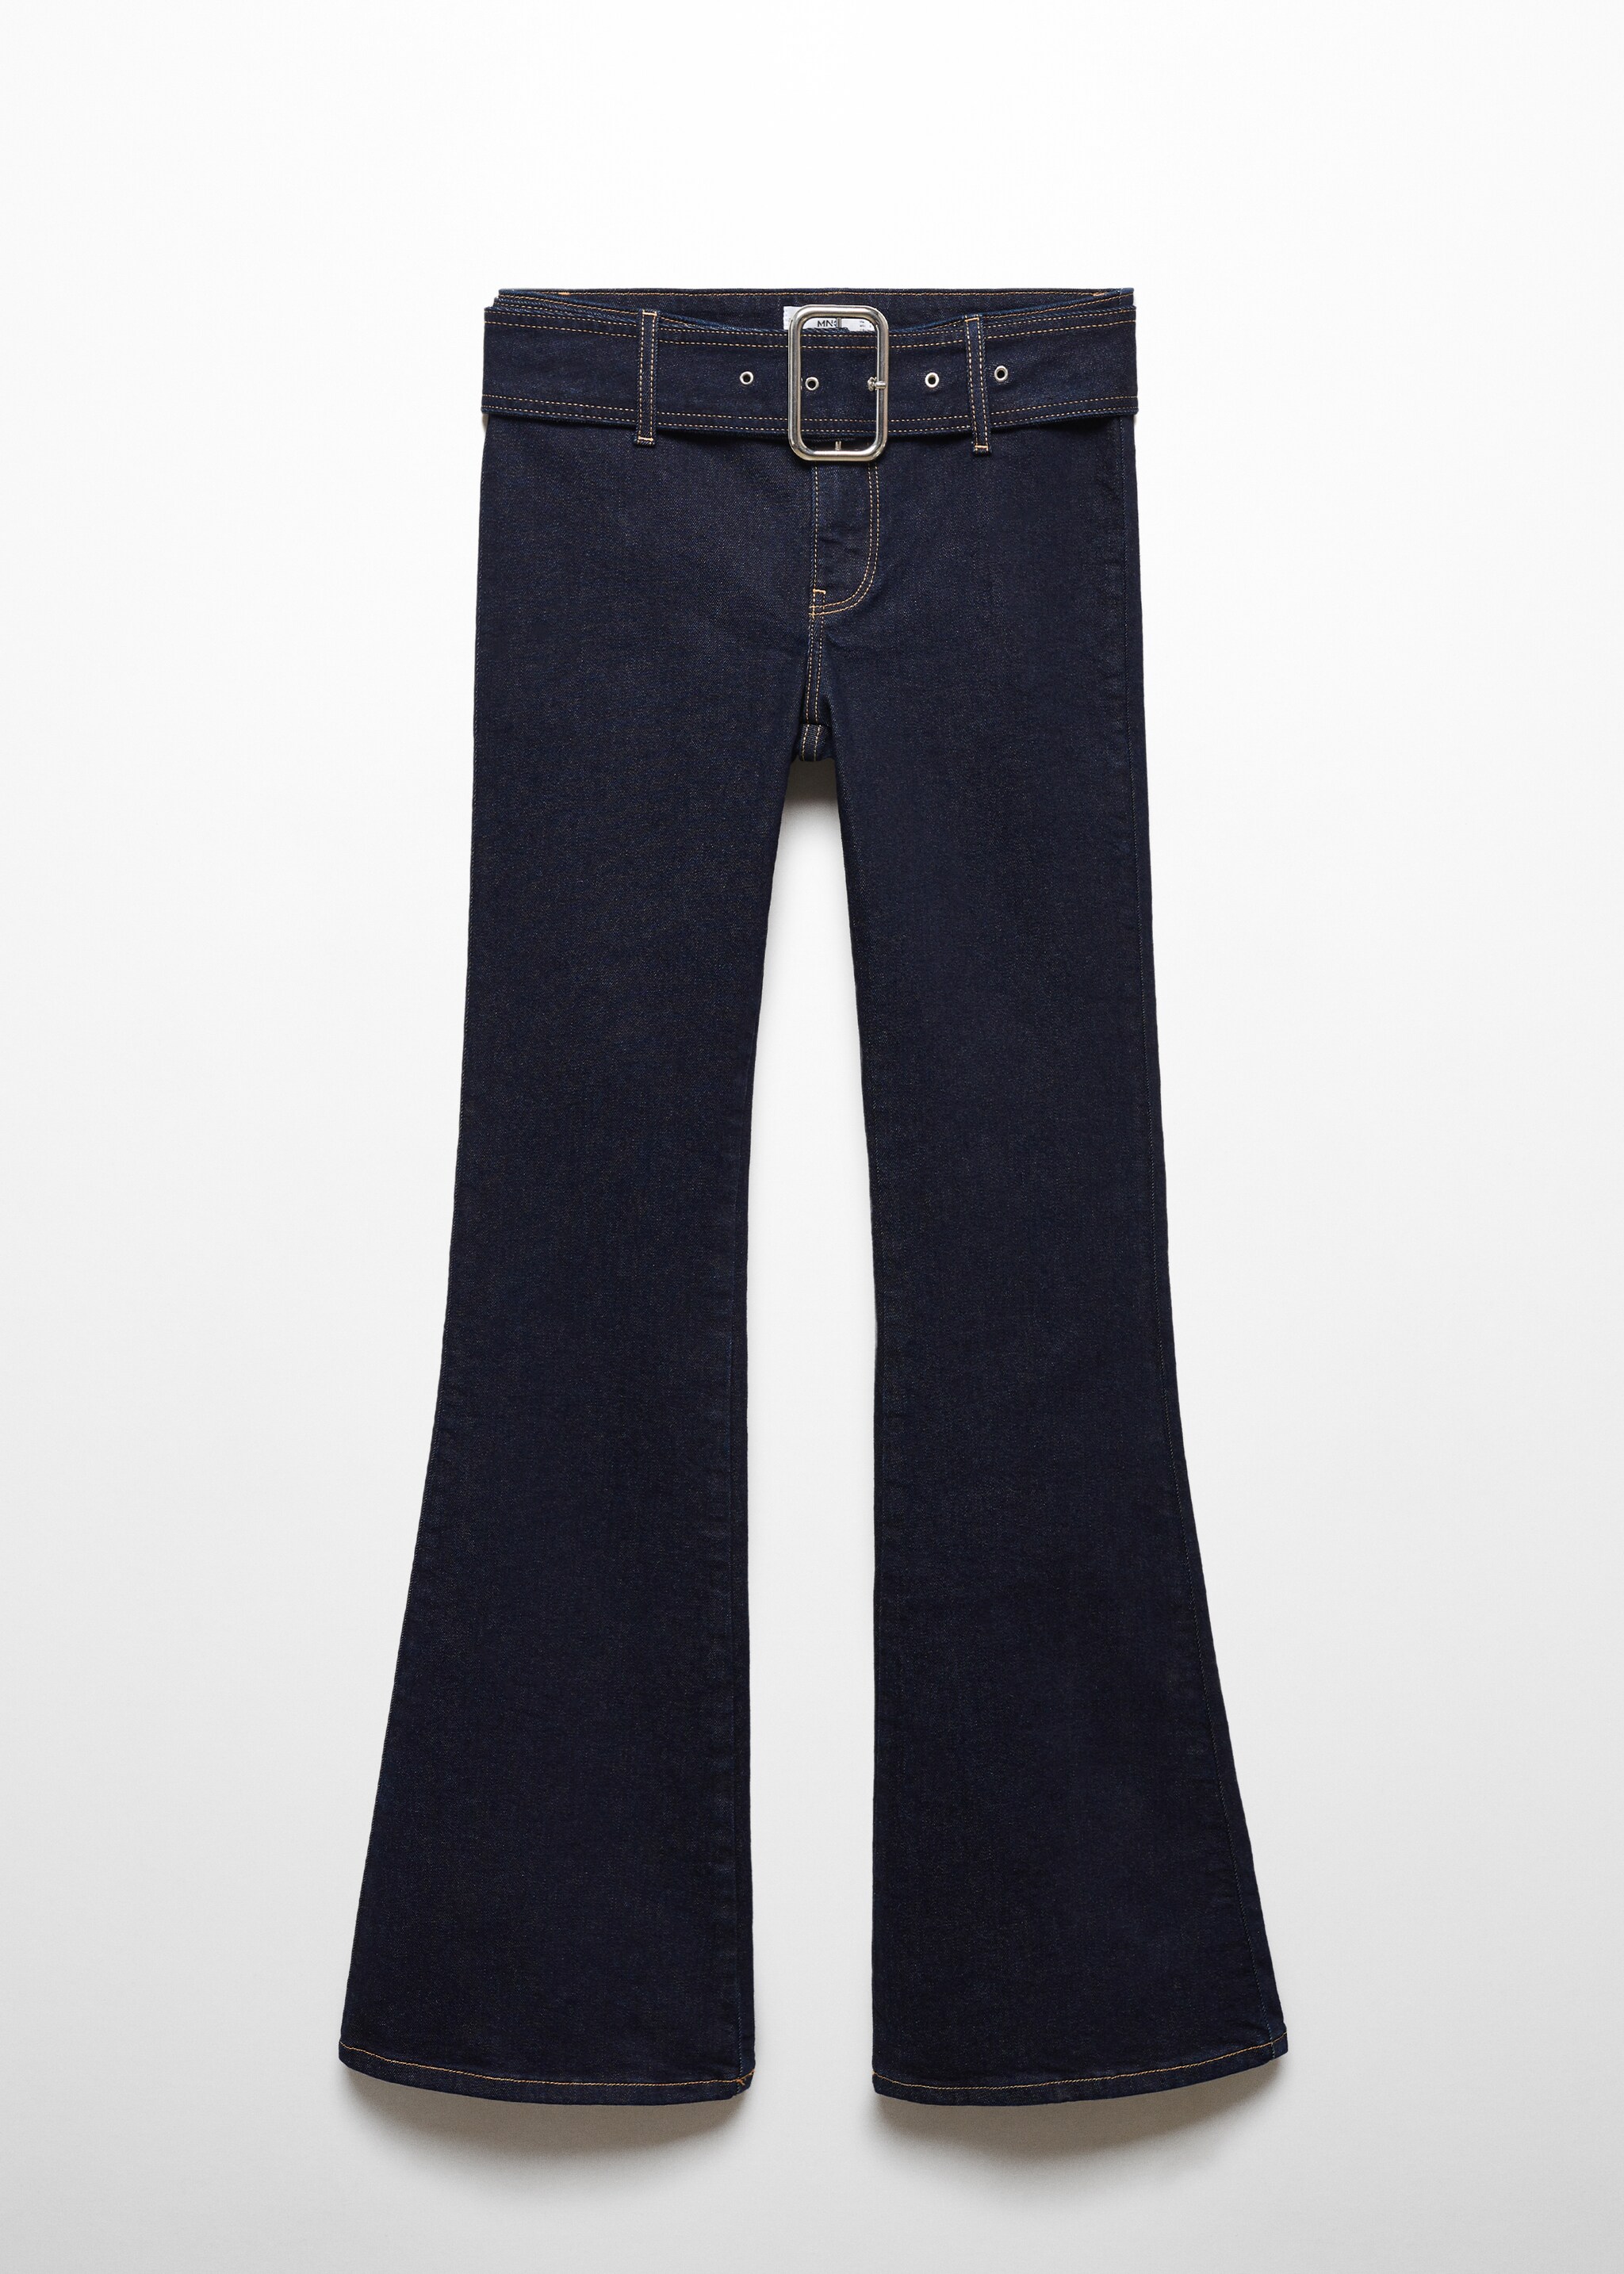 Jeans flare cinturón - Artículo sin modelo